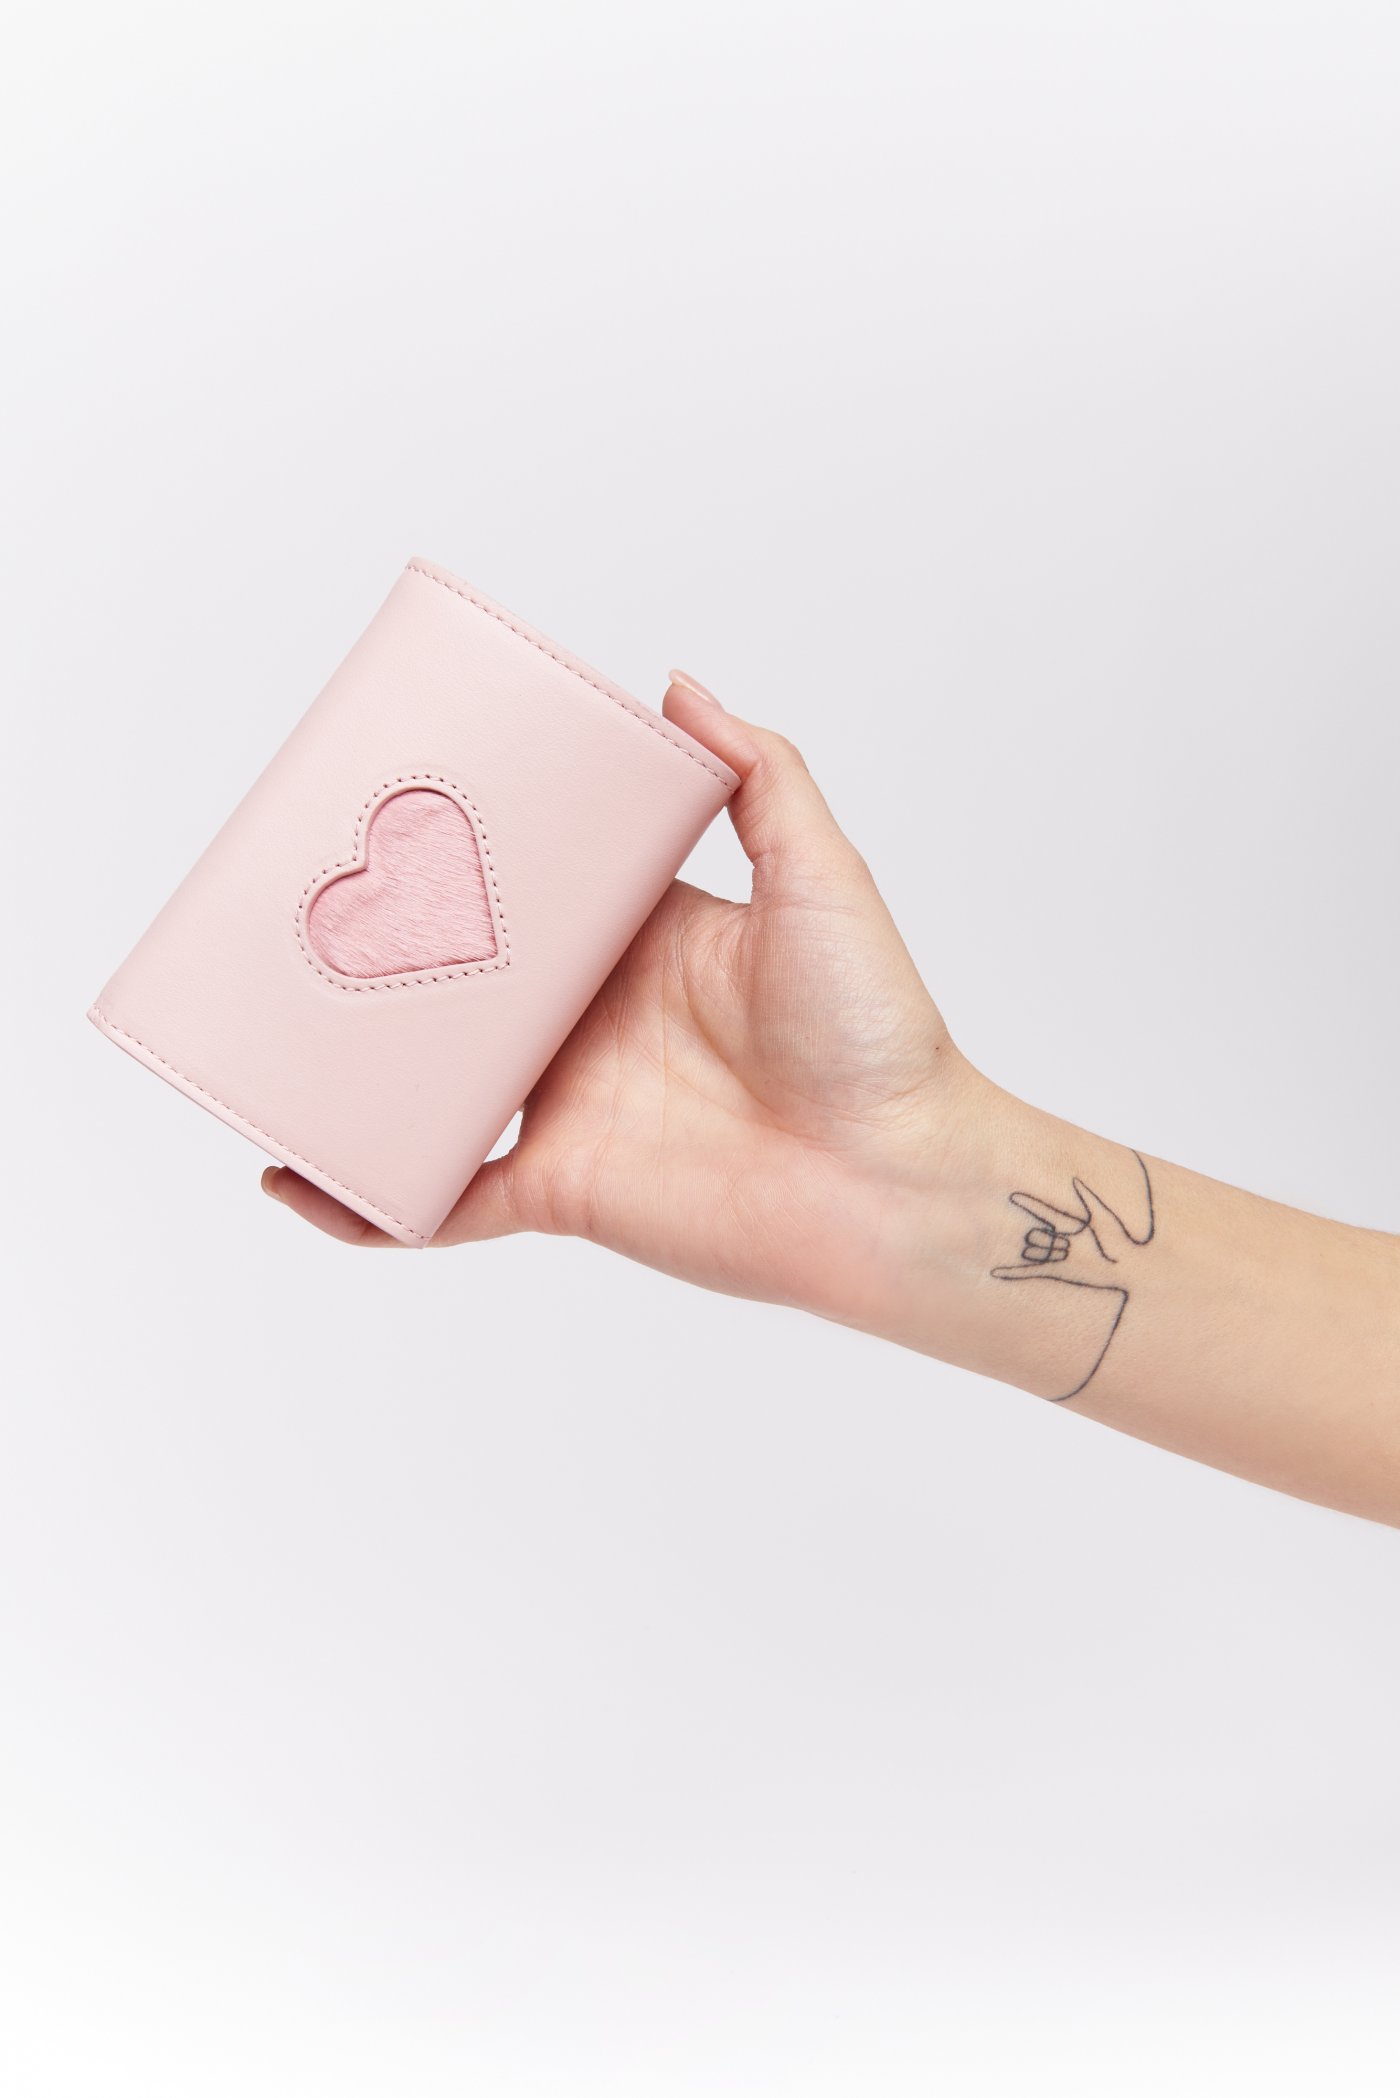 Weisz Fanni - First Dream Pink pénztárca szívecskés Pénztárcák